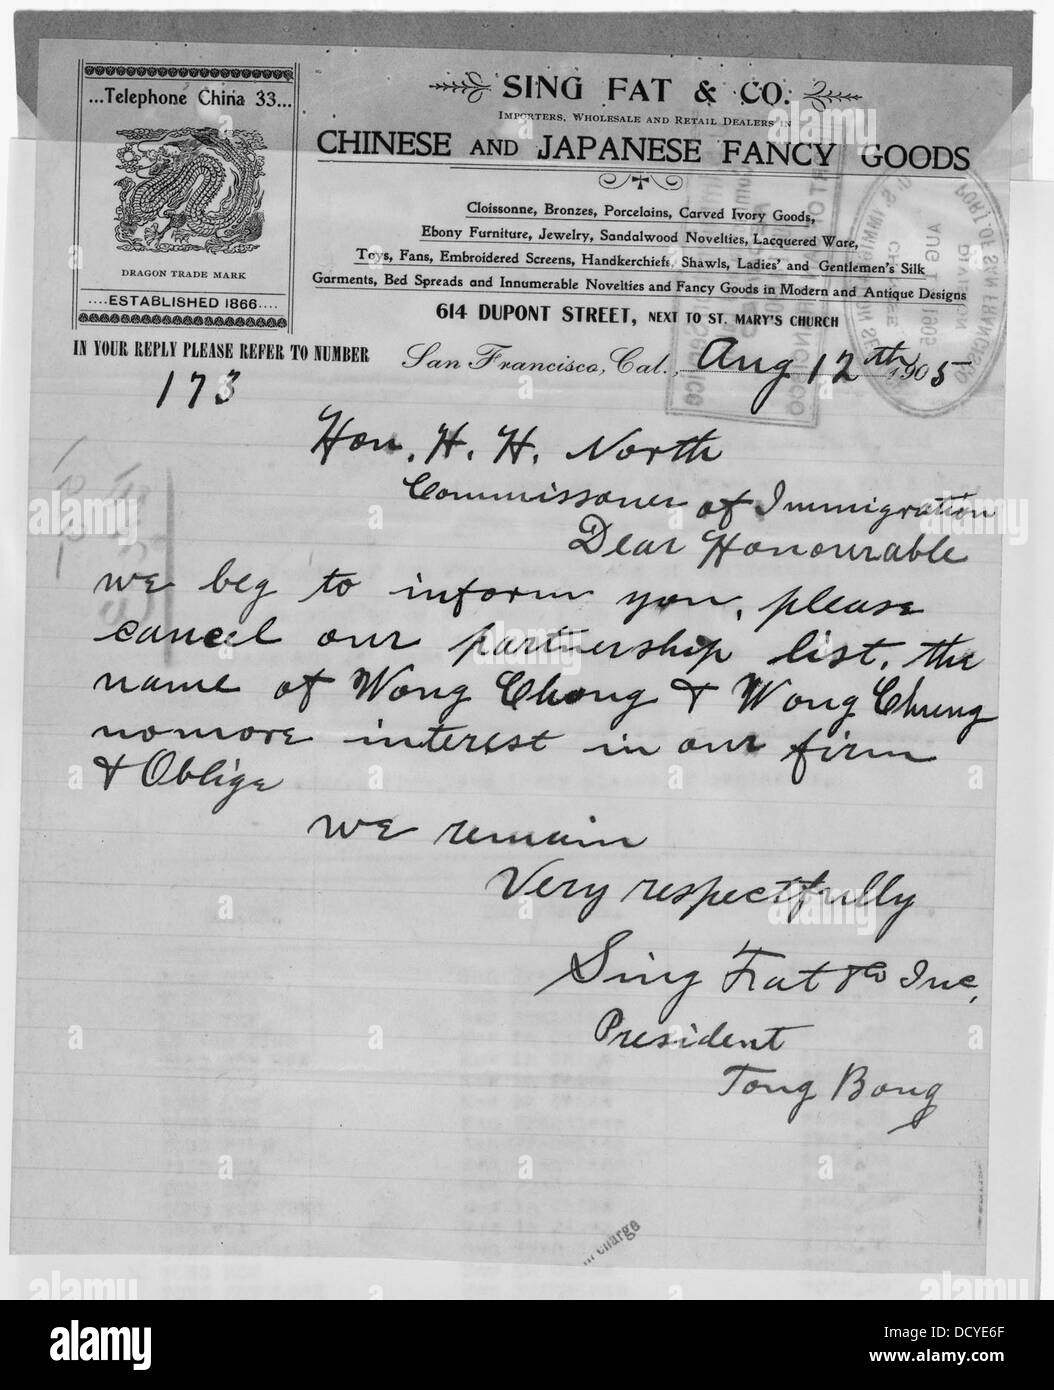 Brief an Sing Fett Co. stationäre H.H. Norden, Kommissar der Einwanderung, San Francisco--296498 Stockfoto